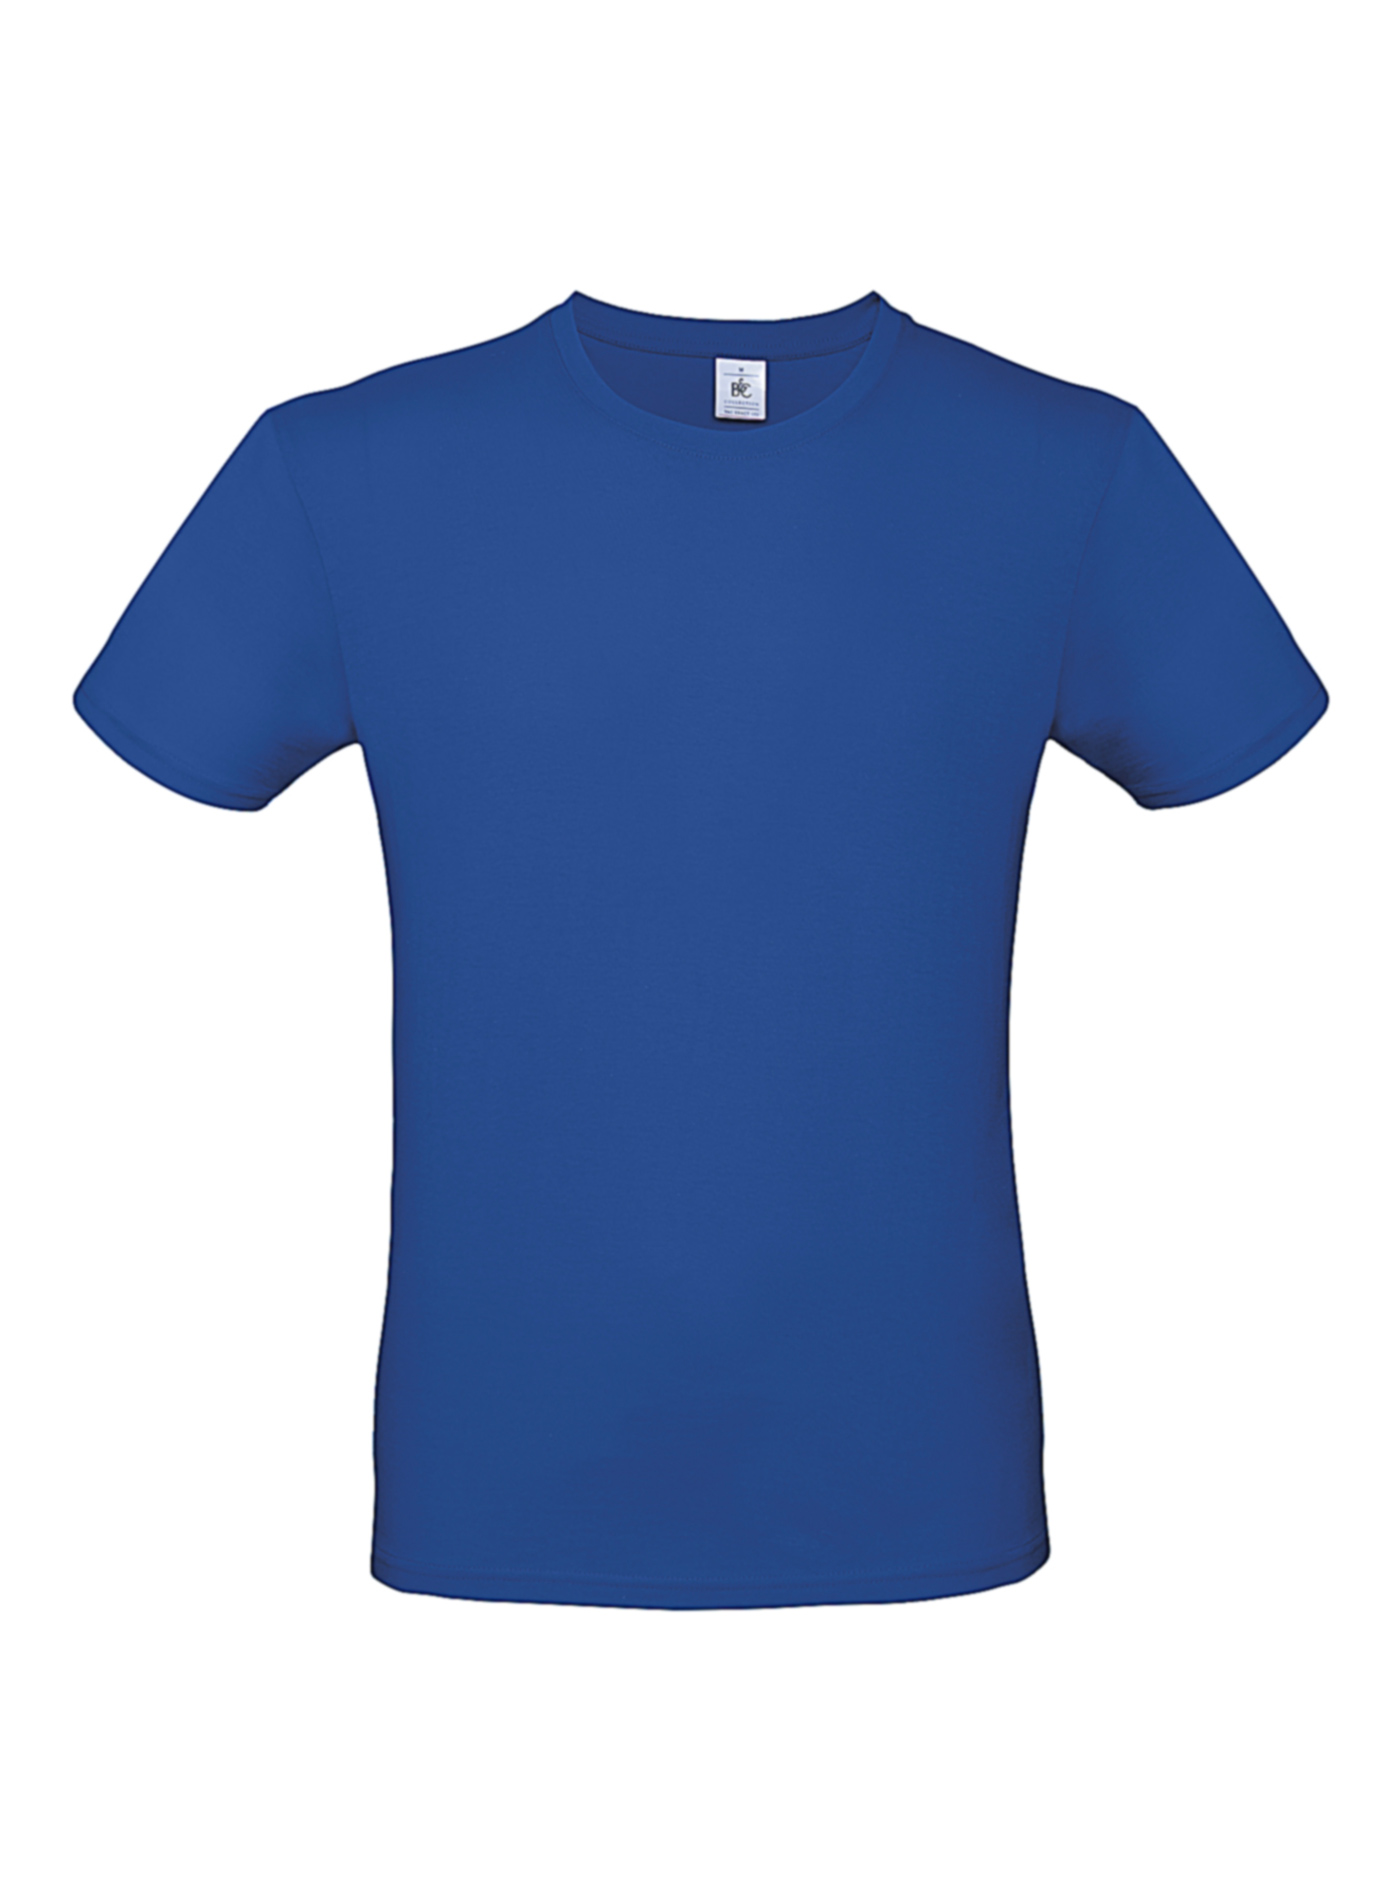 Pánské tričko B&C - královská modrá L